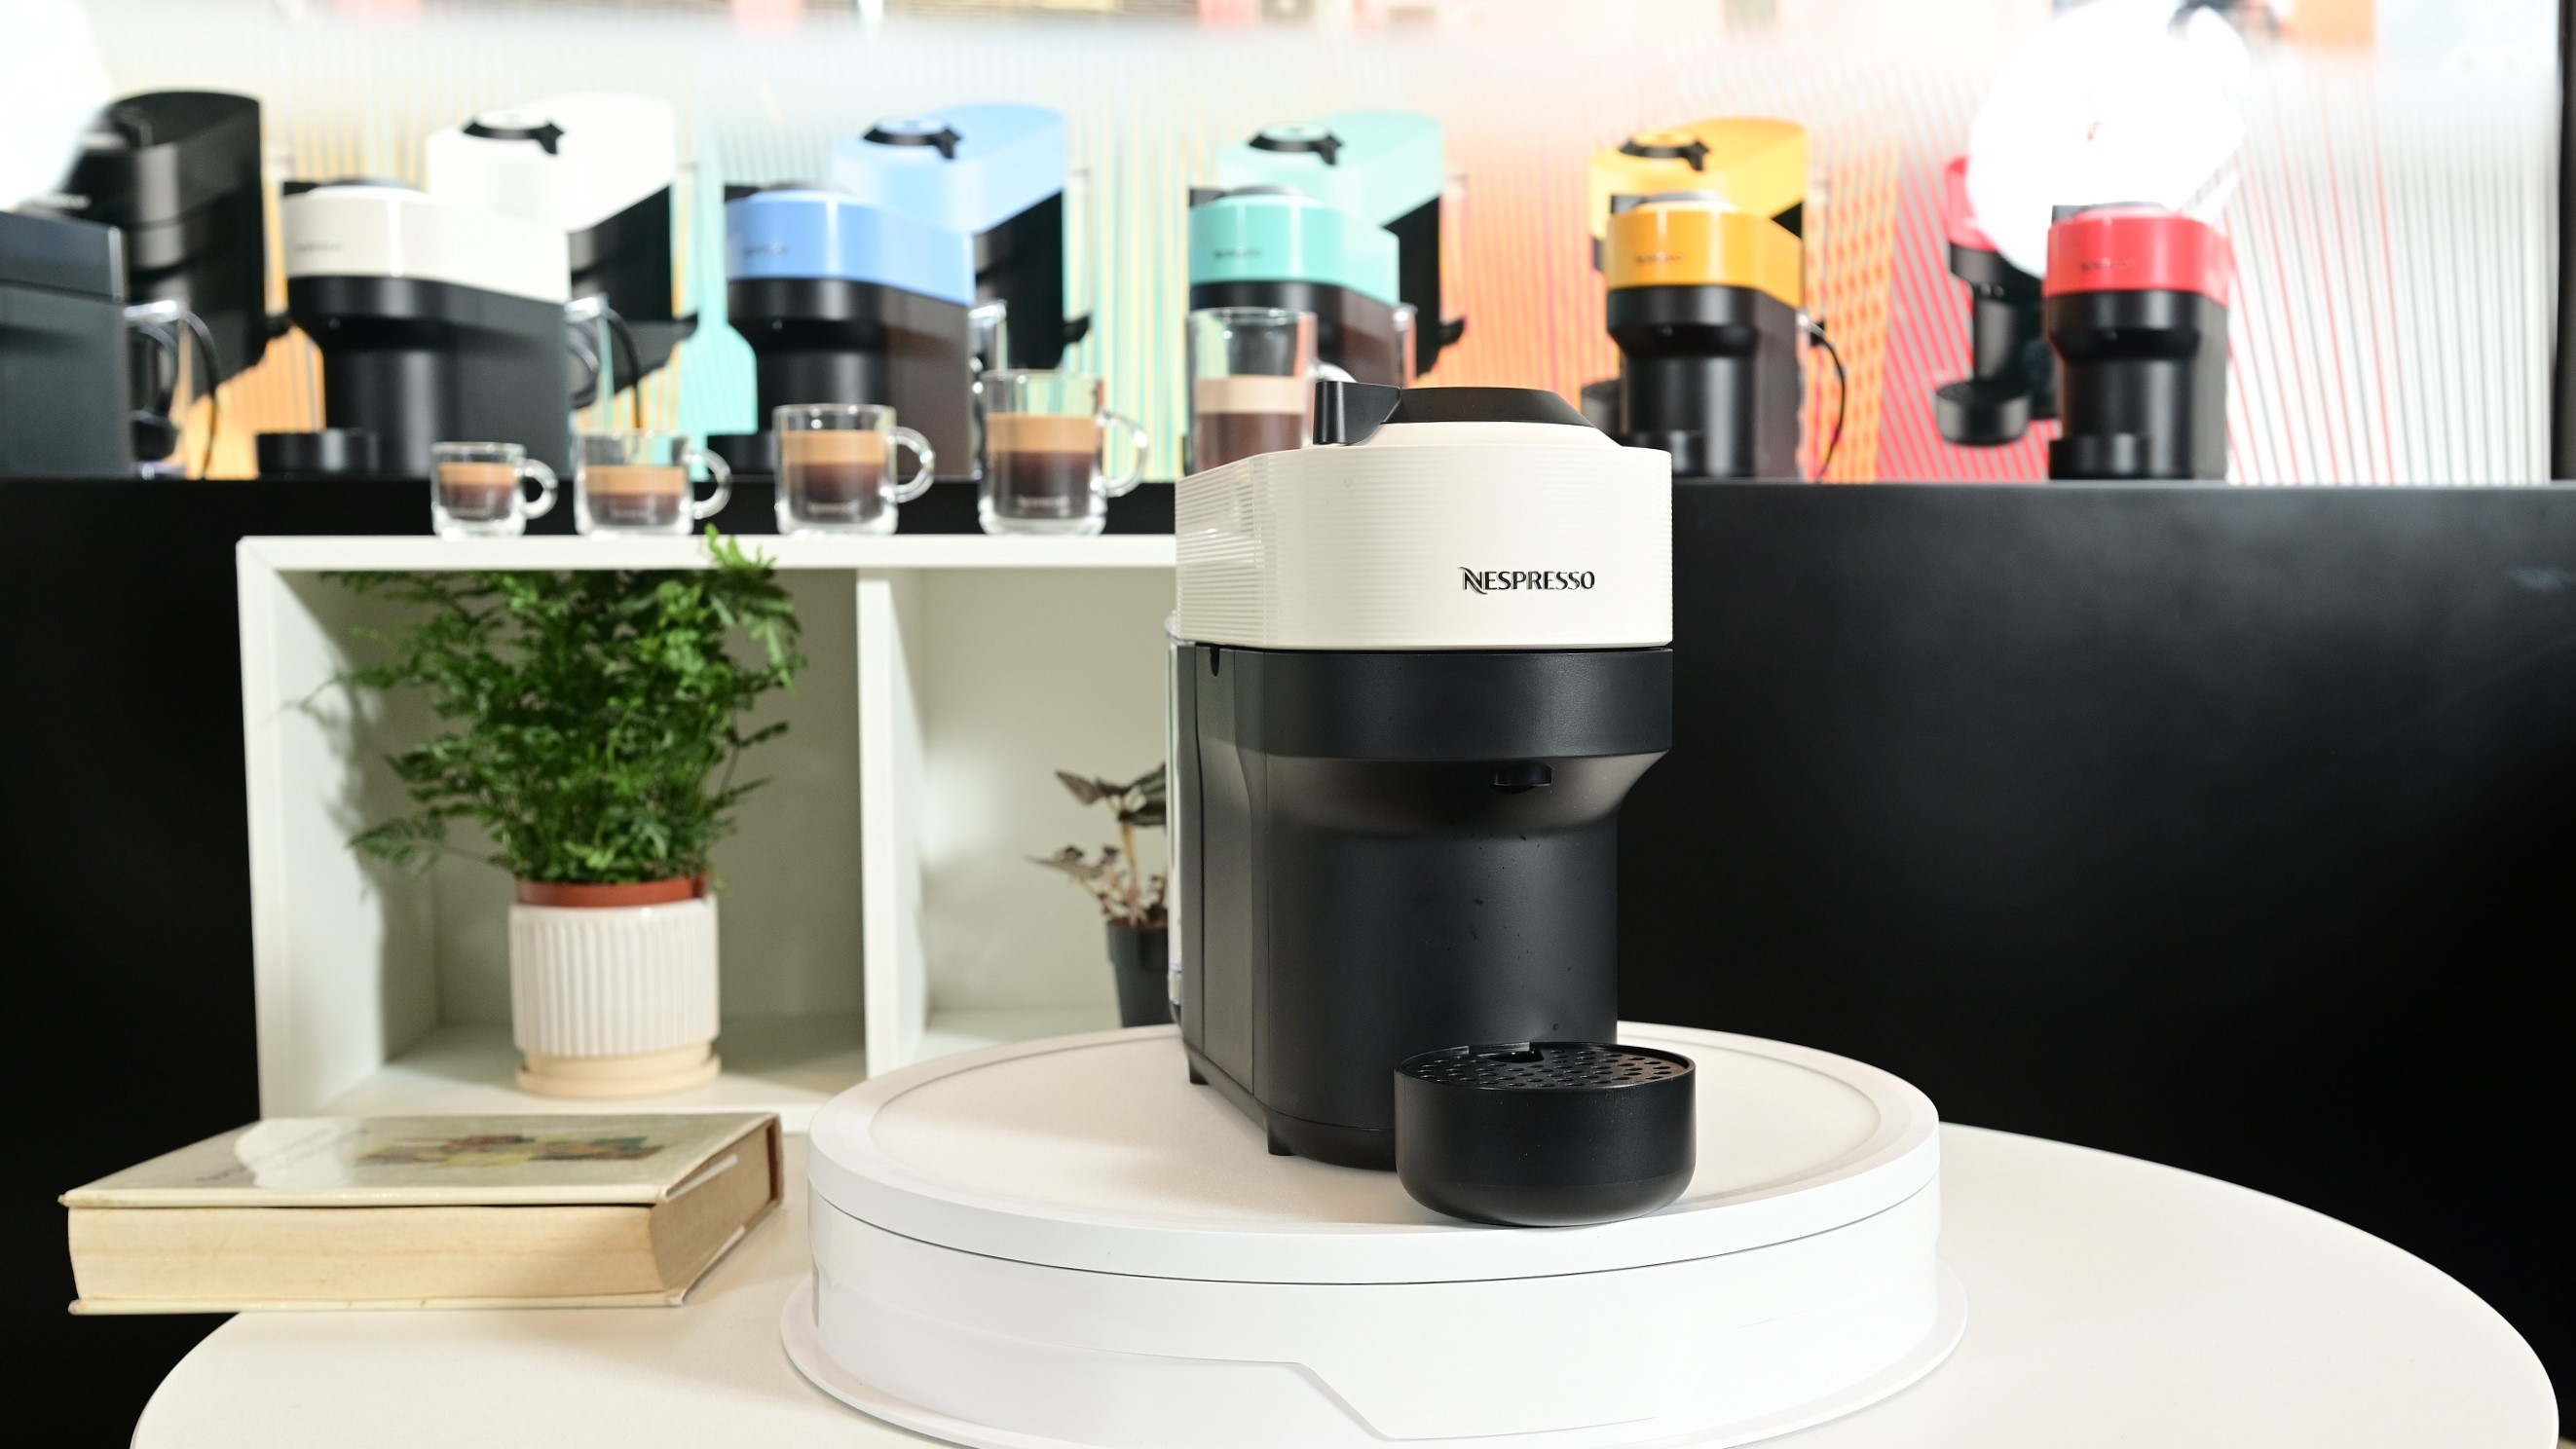 【購物】色彩繽紛咖啡機 纖巧設計打造玩味生活空間